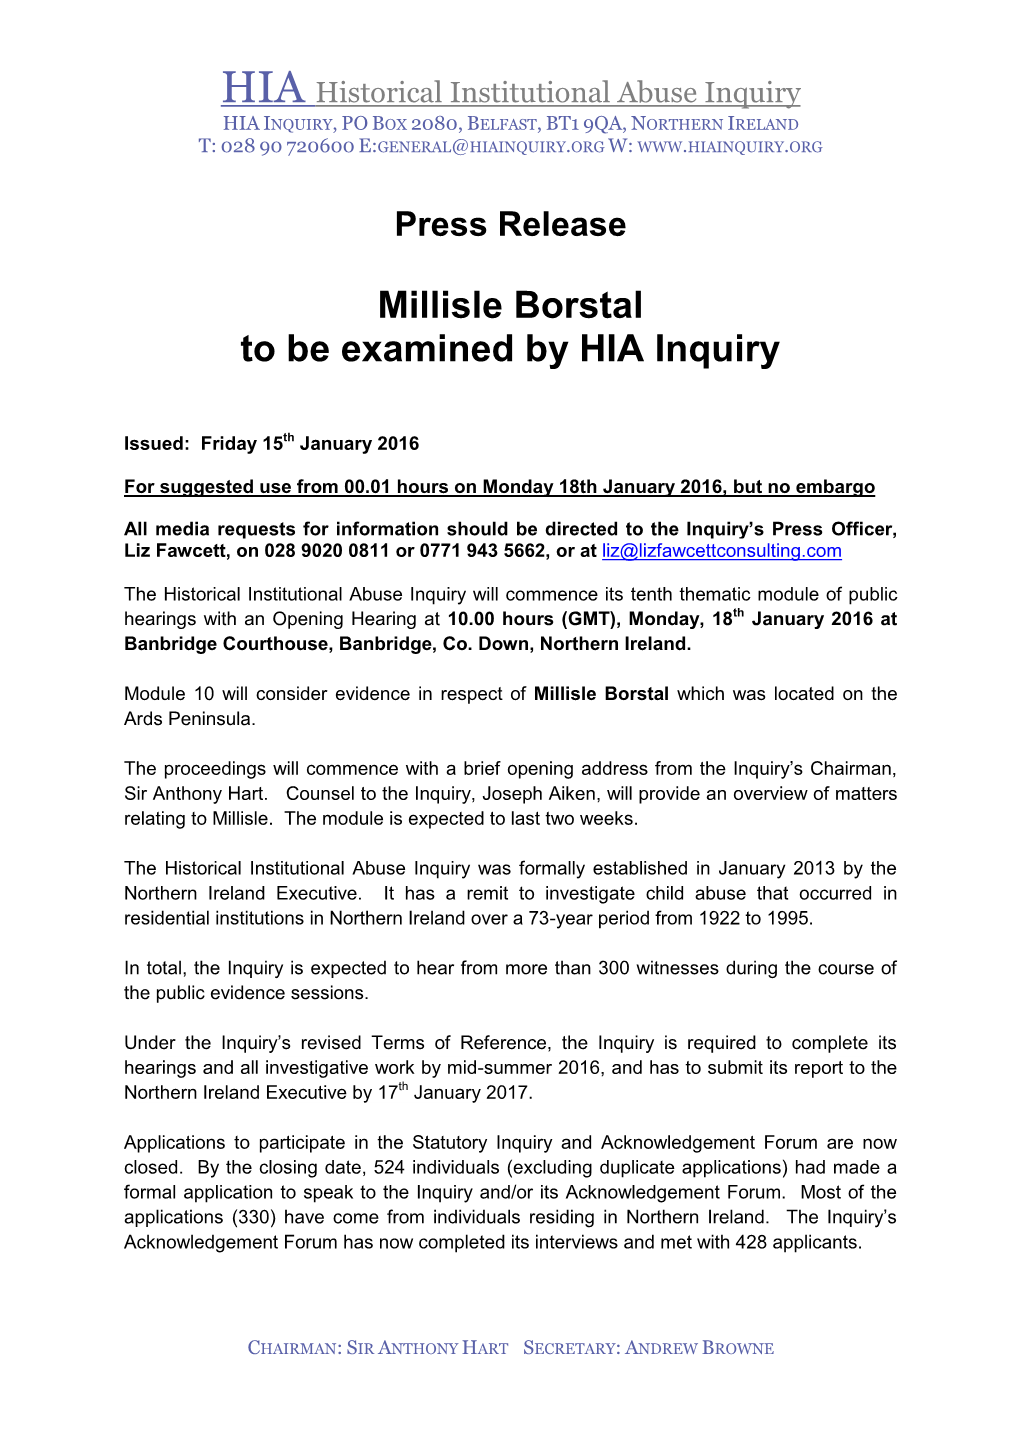 Millisle Borstal to Be Examined by HIA Inquiry